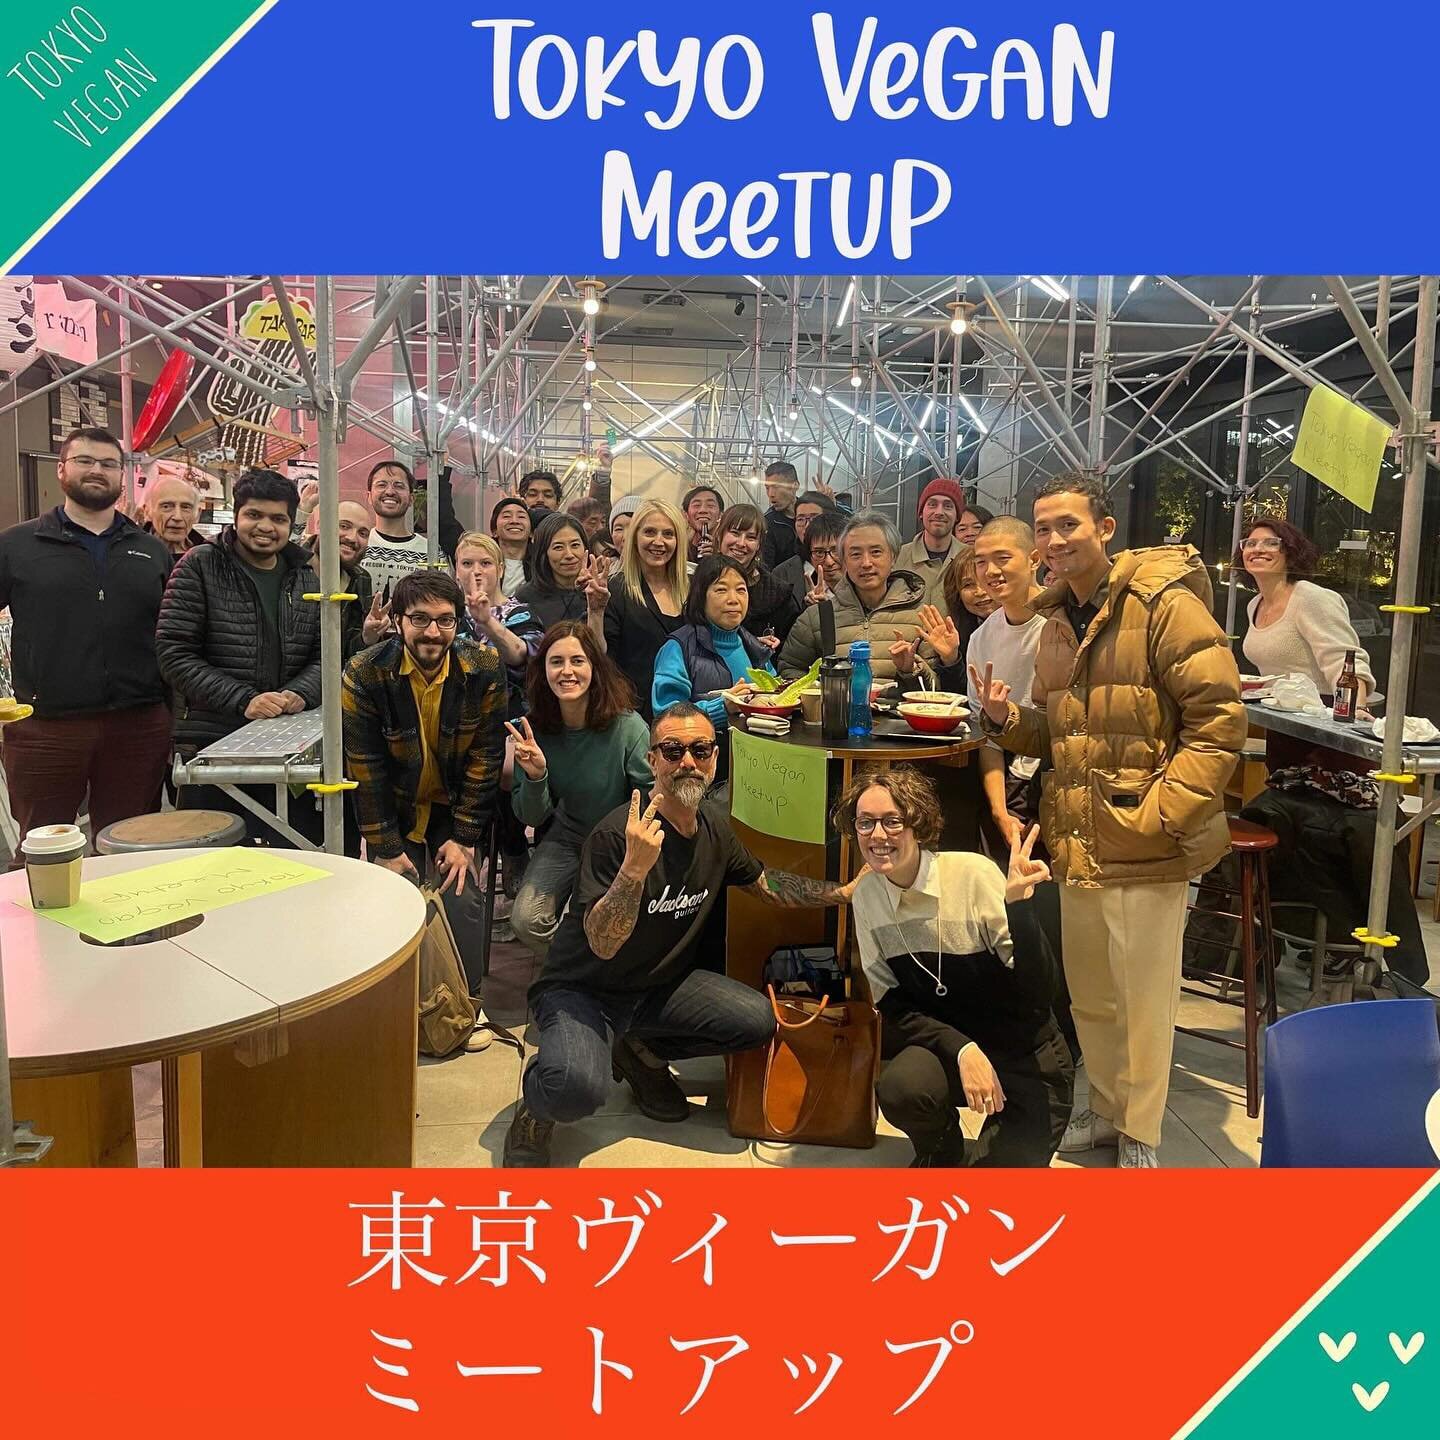 🌱Scroll down for English.🌱 1月23日@commune で開催された東京ヴィーガンミートアップ にご参加頂いた皆さん、ありがとうございました! 💚楽しかった!🙂🌱
次回の東京ヴィーガンミートアップは3/26に開催します。。(イベントページへのリンクはプロフィールにあります) 
💚そこでお会いできるのを楽しみにしています! 💚

🌱東京ヴィーガンミートアップは、コミュニティのボランティアが運営するコミュニティグループです。どなたでも大歓迎です（ヴィーガンの